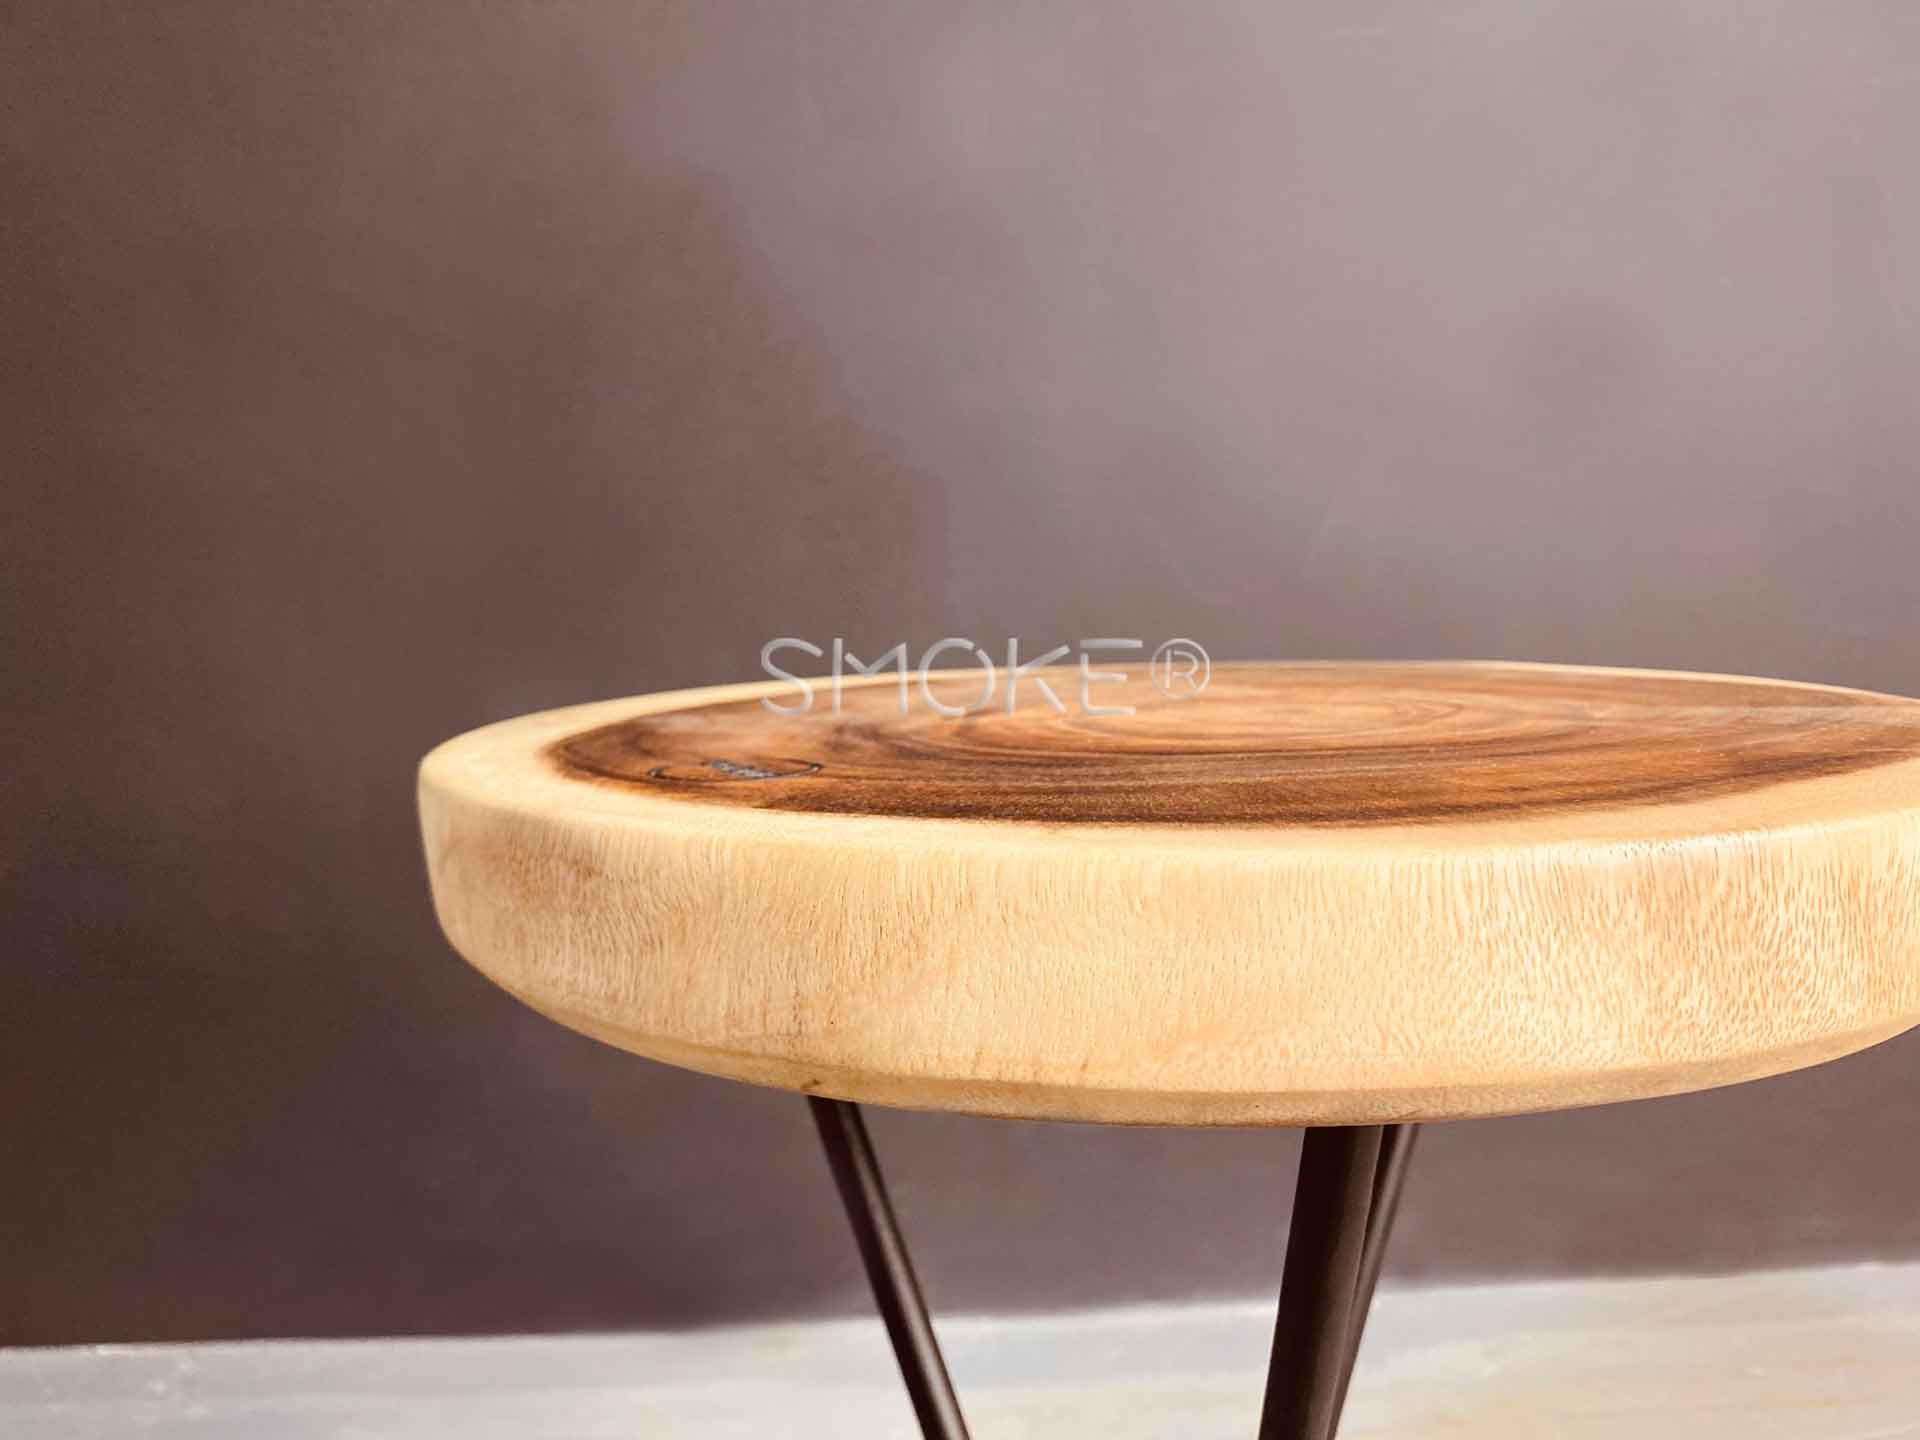 Caleb Suar Wood stool